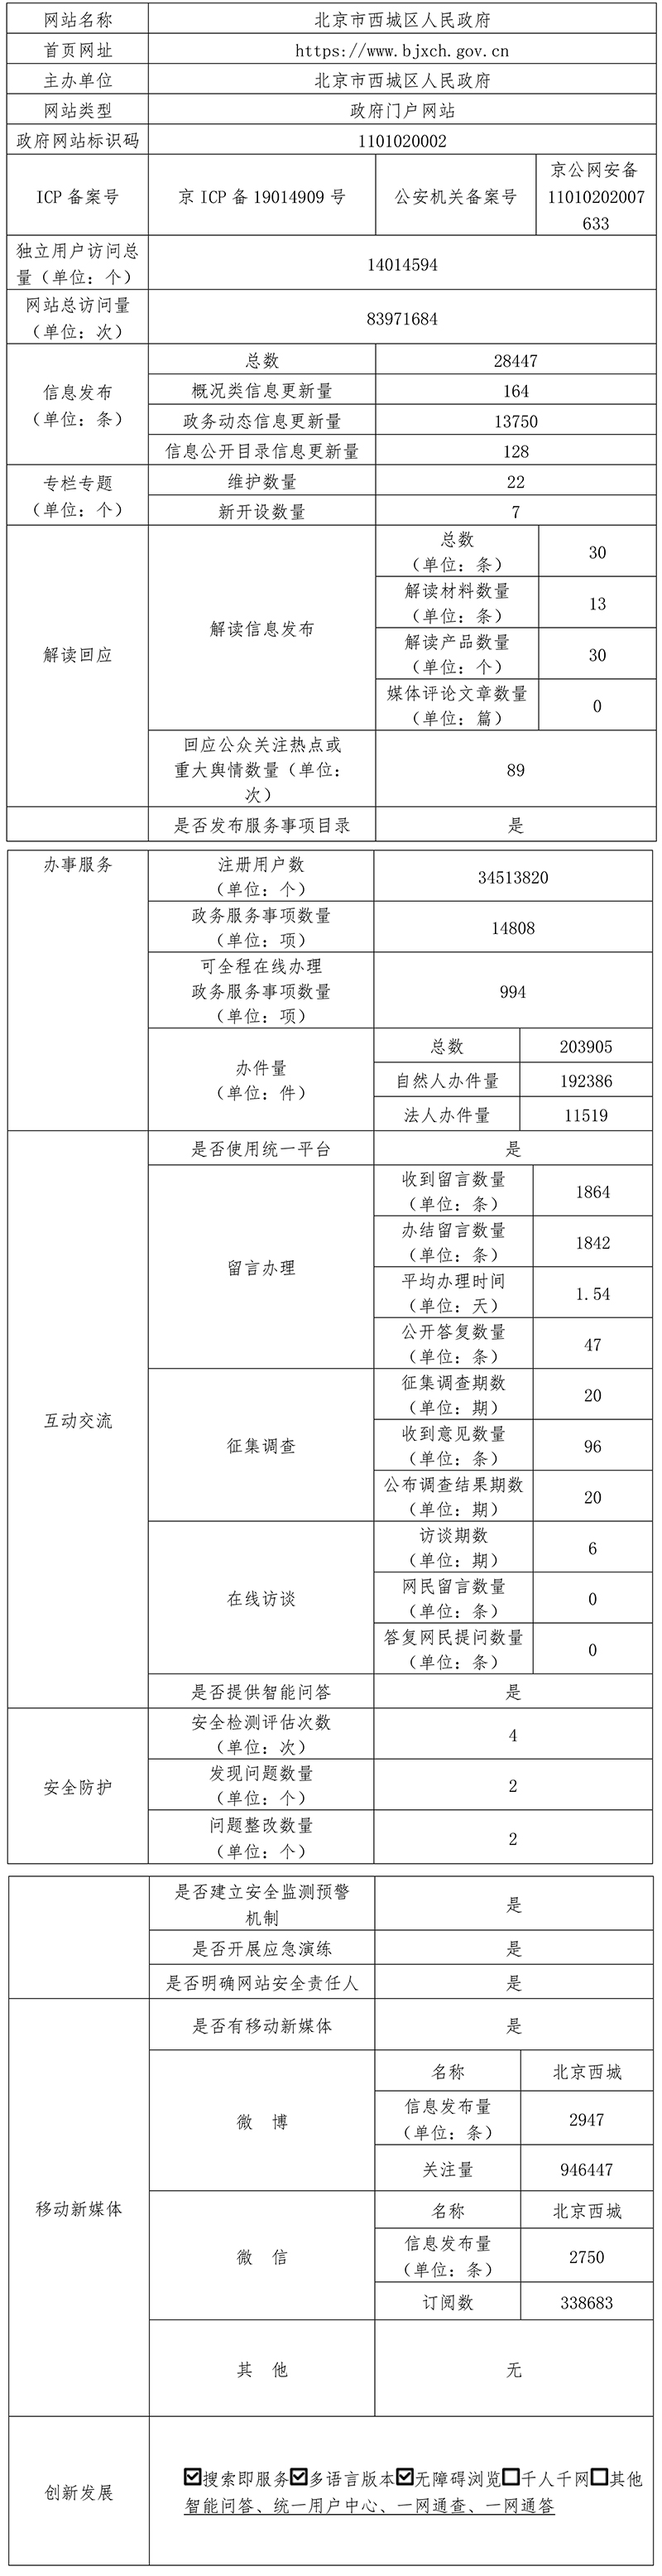 北京市西城区人民政府2021年政府网站年度工作报表